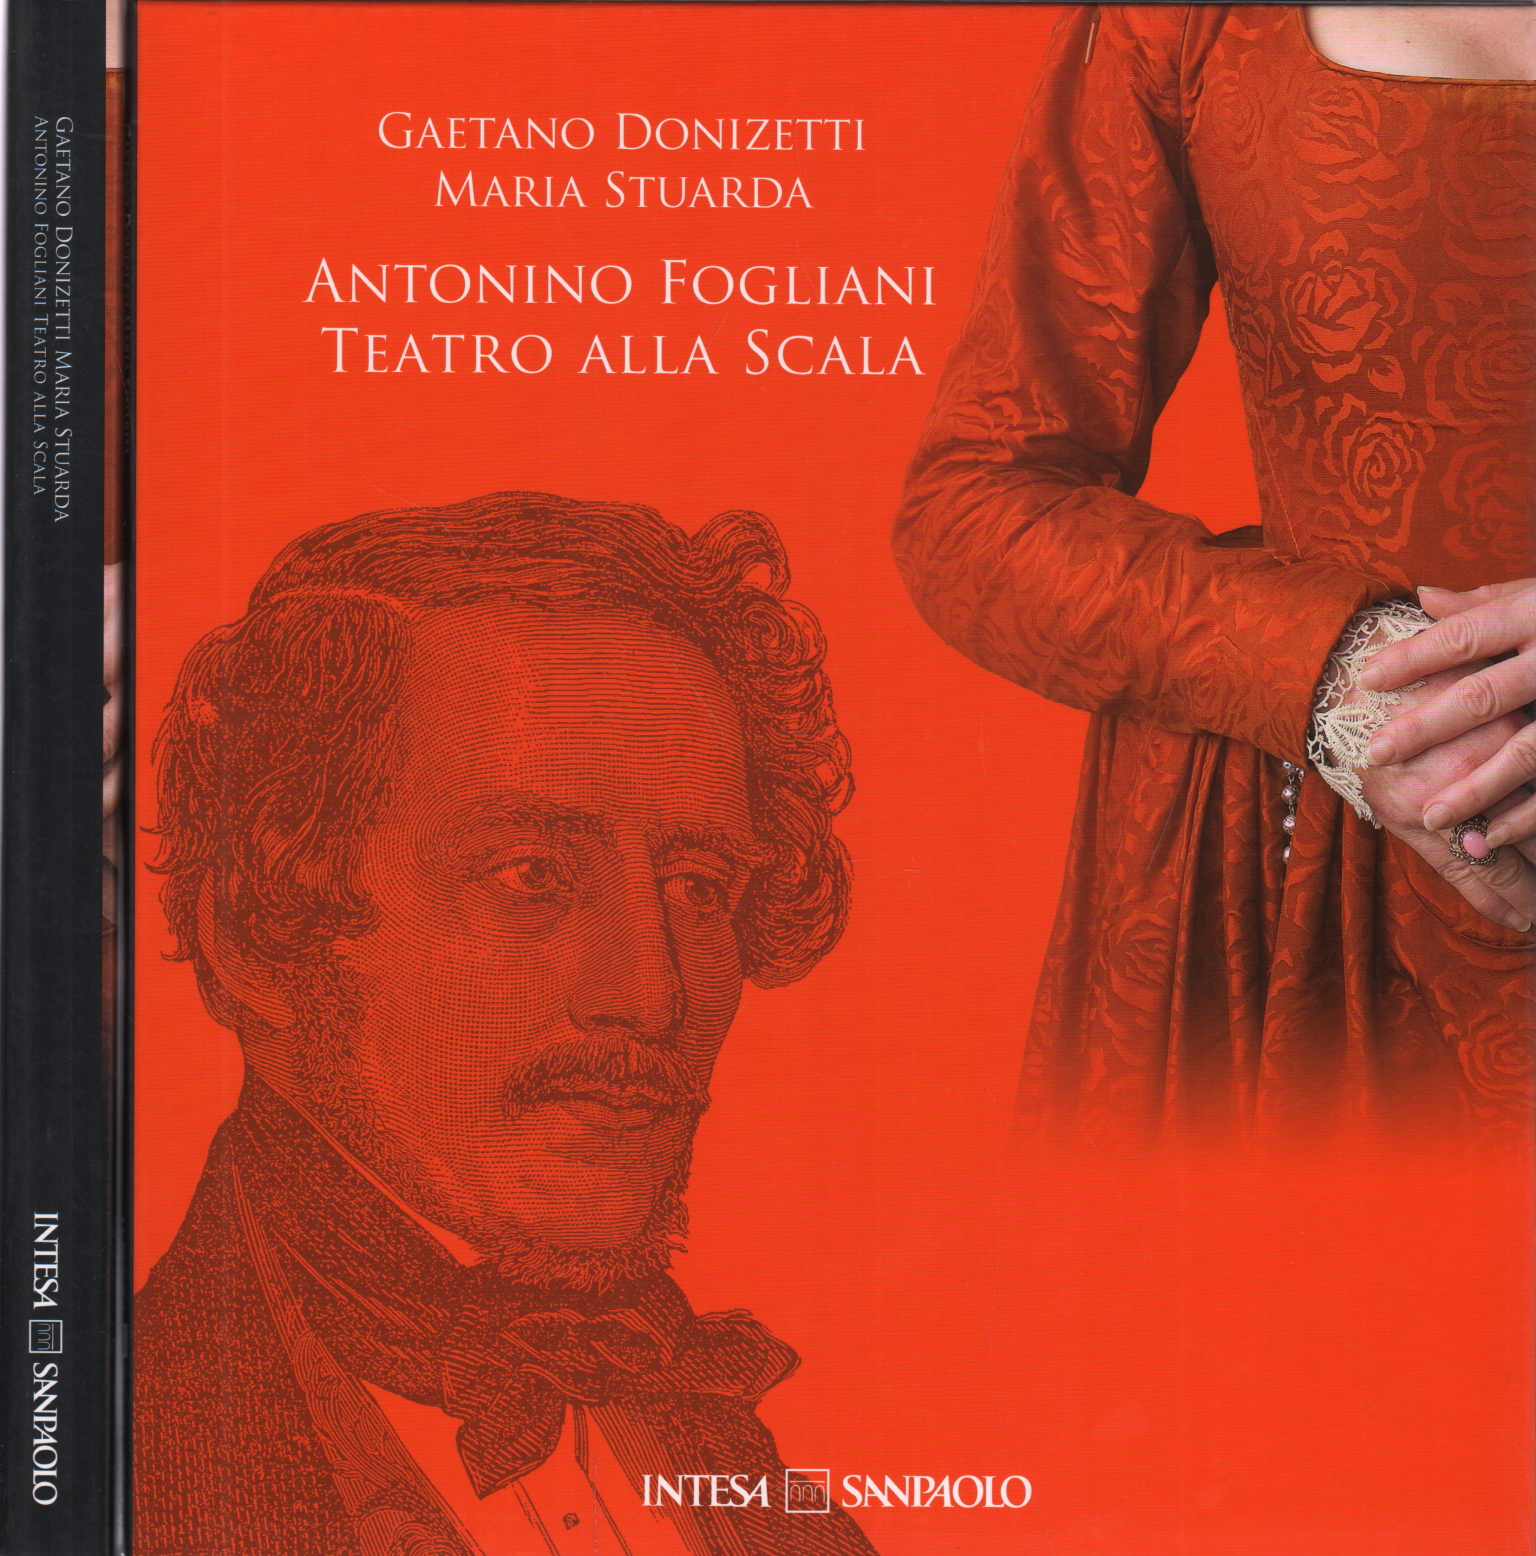 Gaetano Donizetti "Maria Stuarda" Antonino Foglia, Gaetano Donizetti